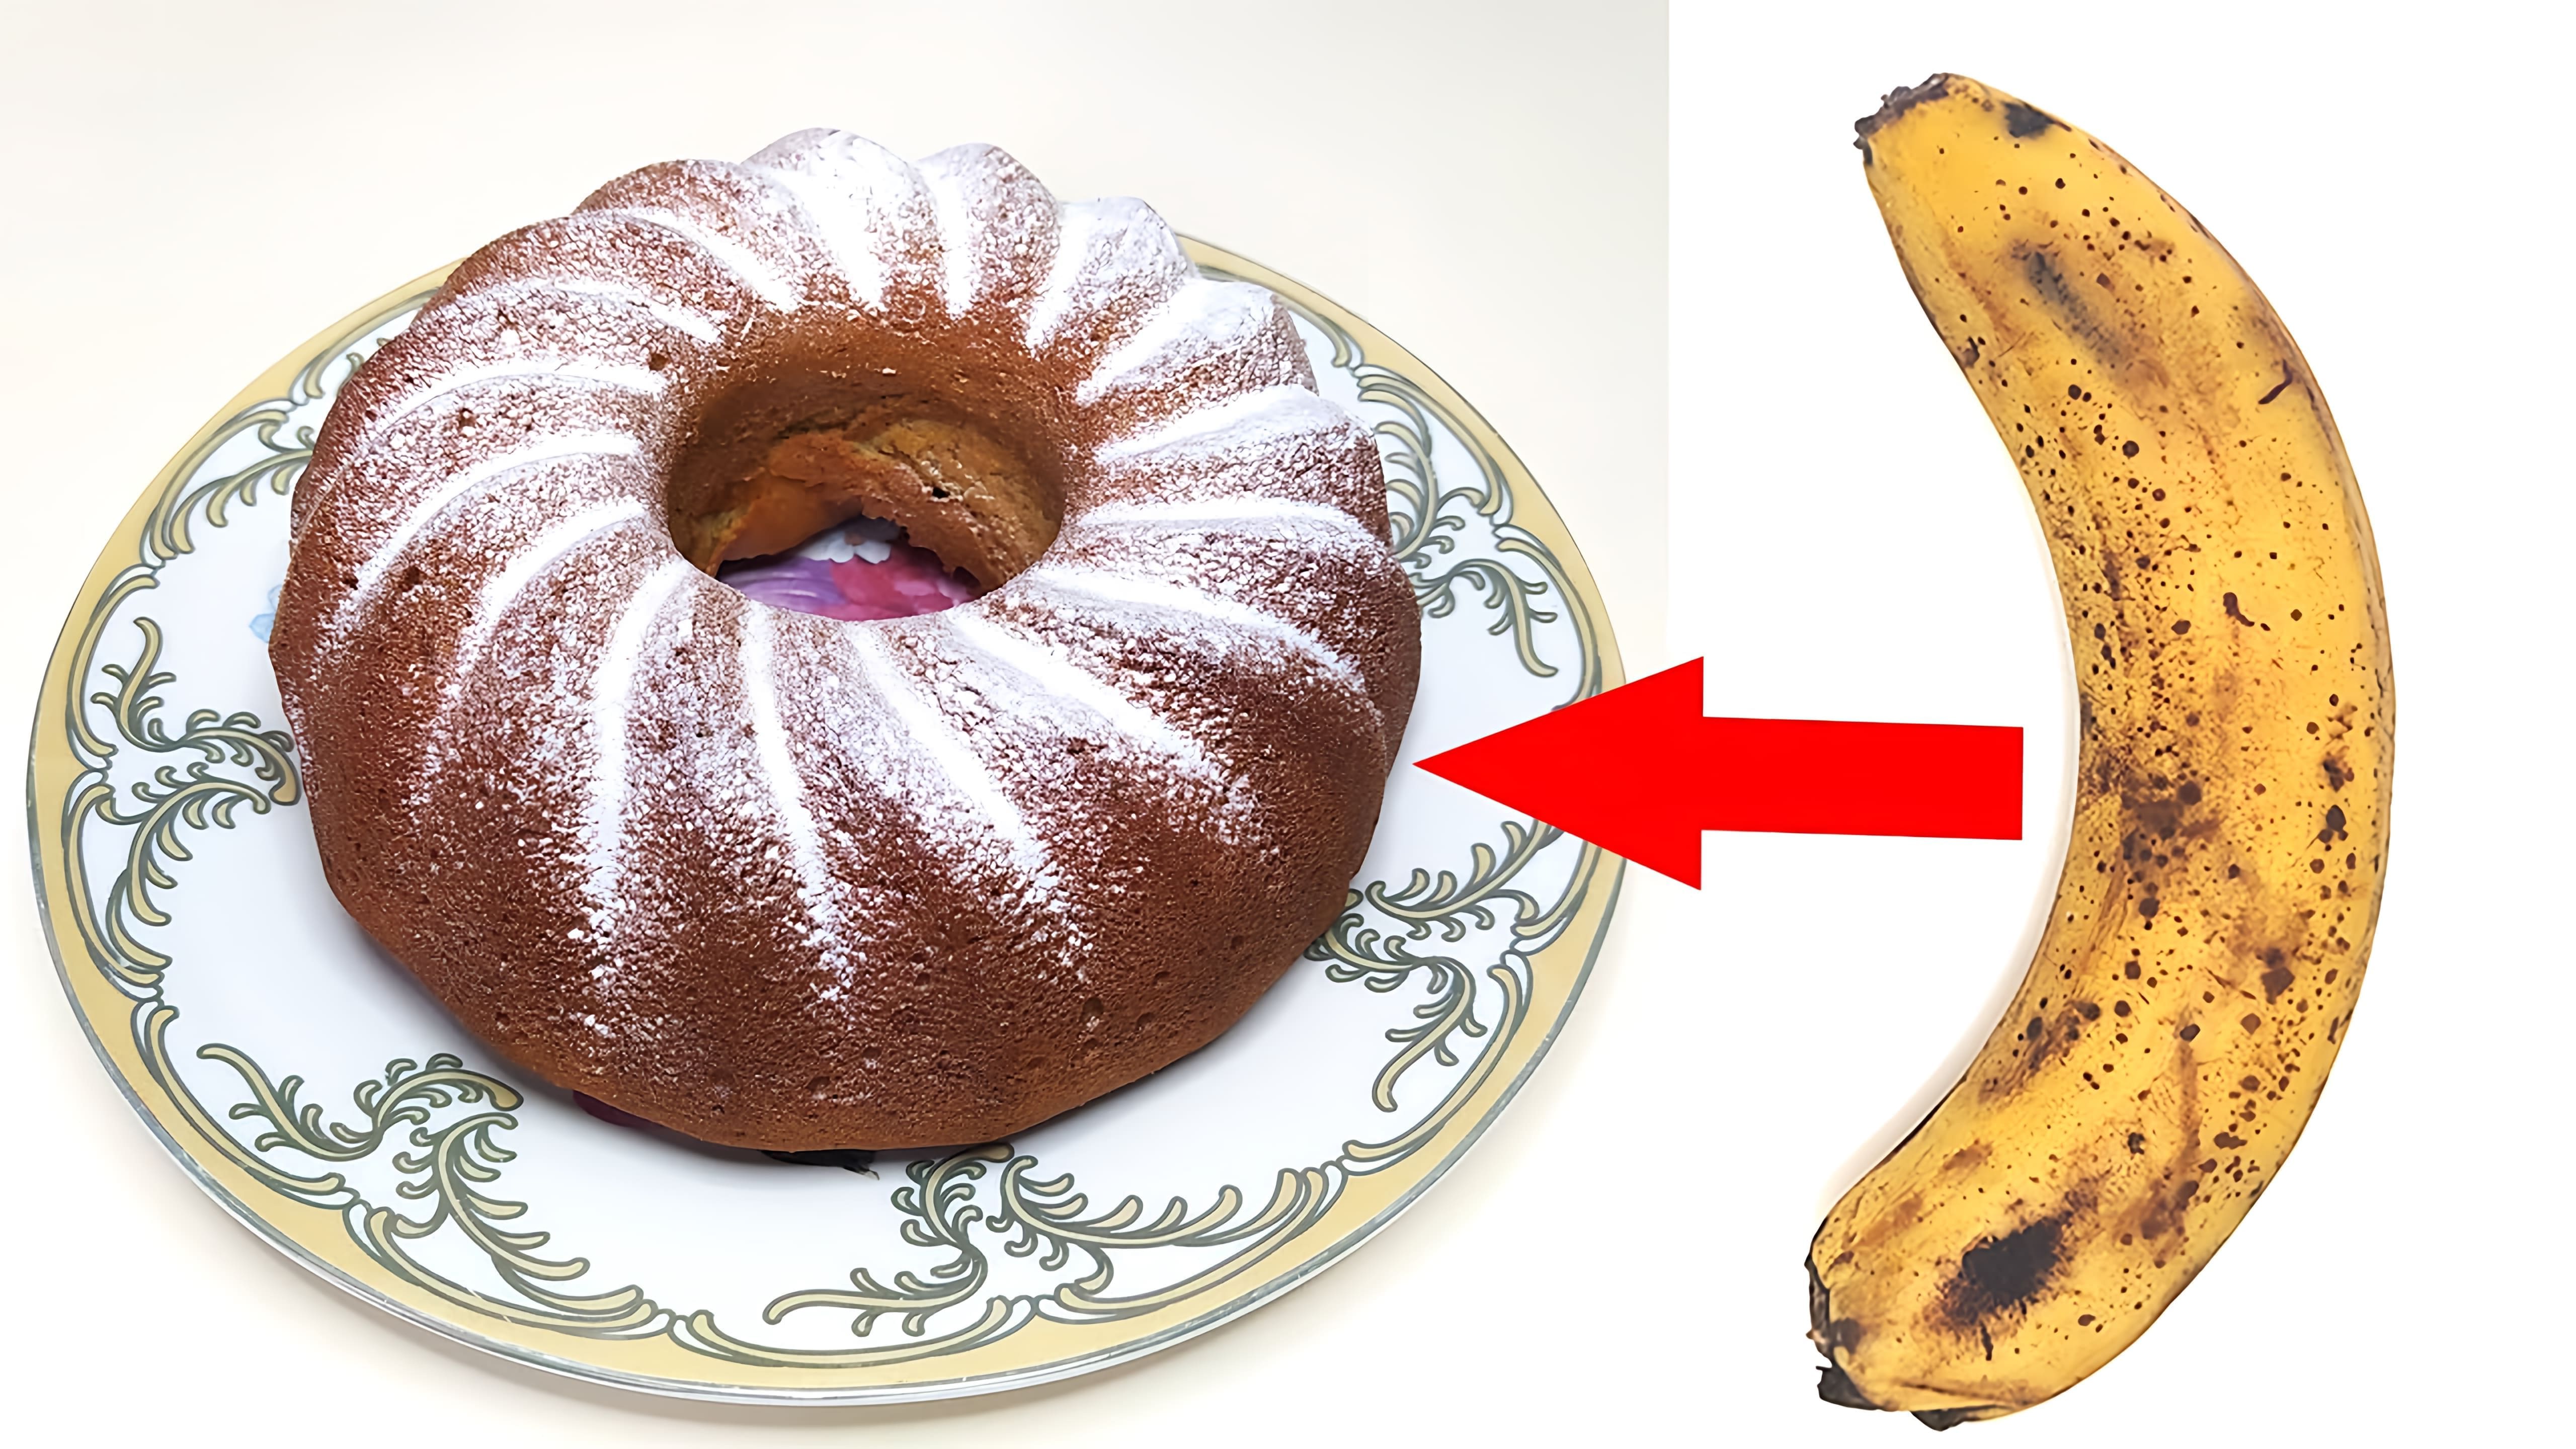 В этом видео демонстрируется рецепт приготовления пышного кекса из переспелого банана